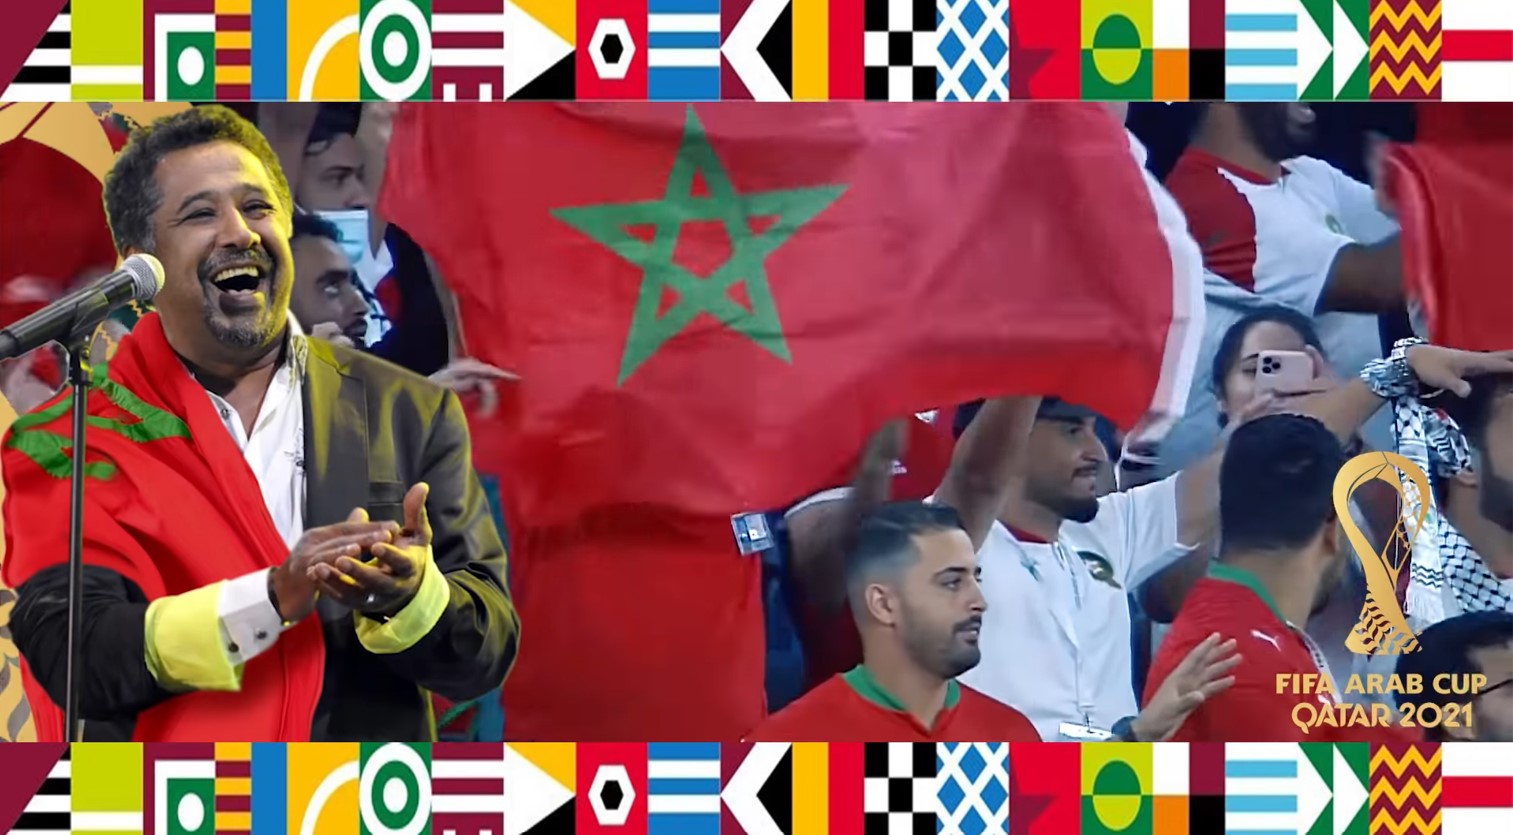 الشاب خالد , الشاب خالد يطلق أغنية لأسود الأطلس , الشاب خالد يشجع المنتخب المغربي , موروكو فوريفر , Morocco 4Ever , cheb Khaled